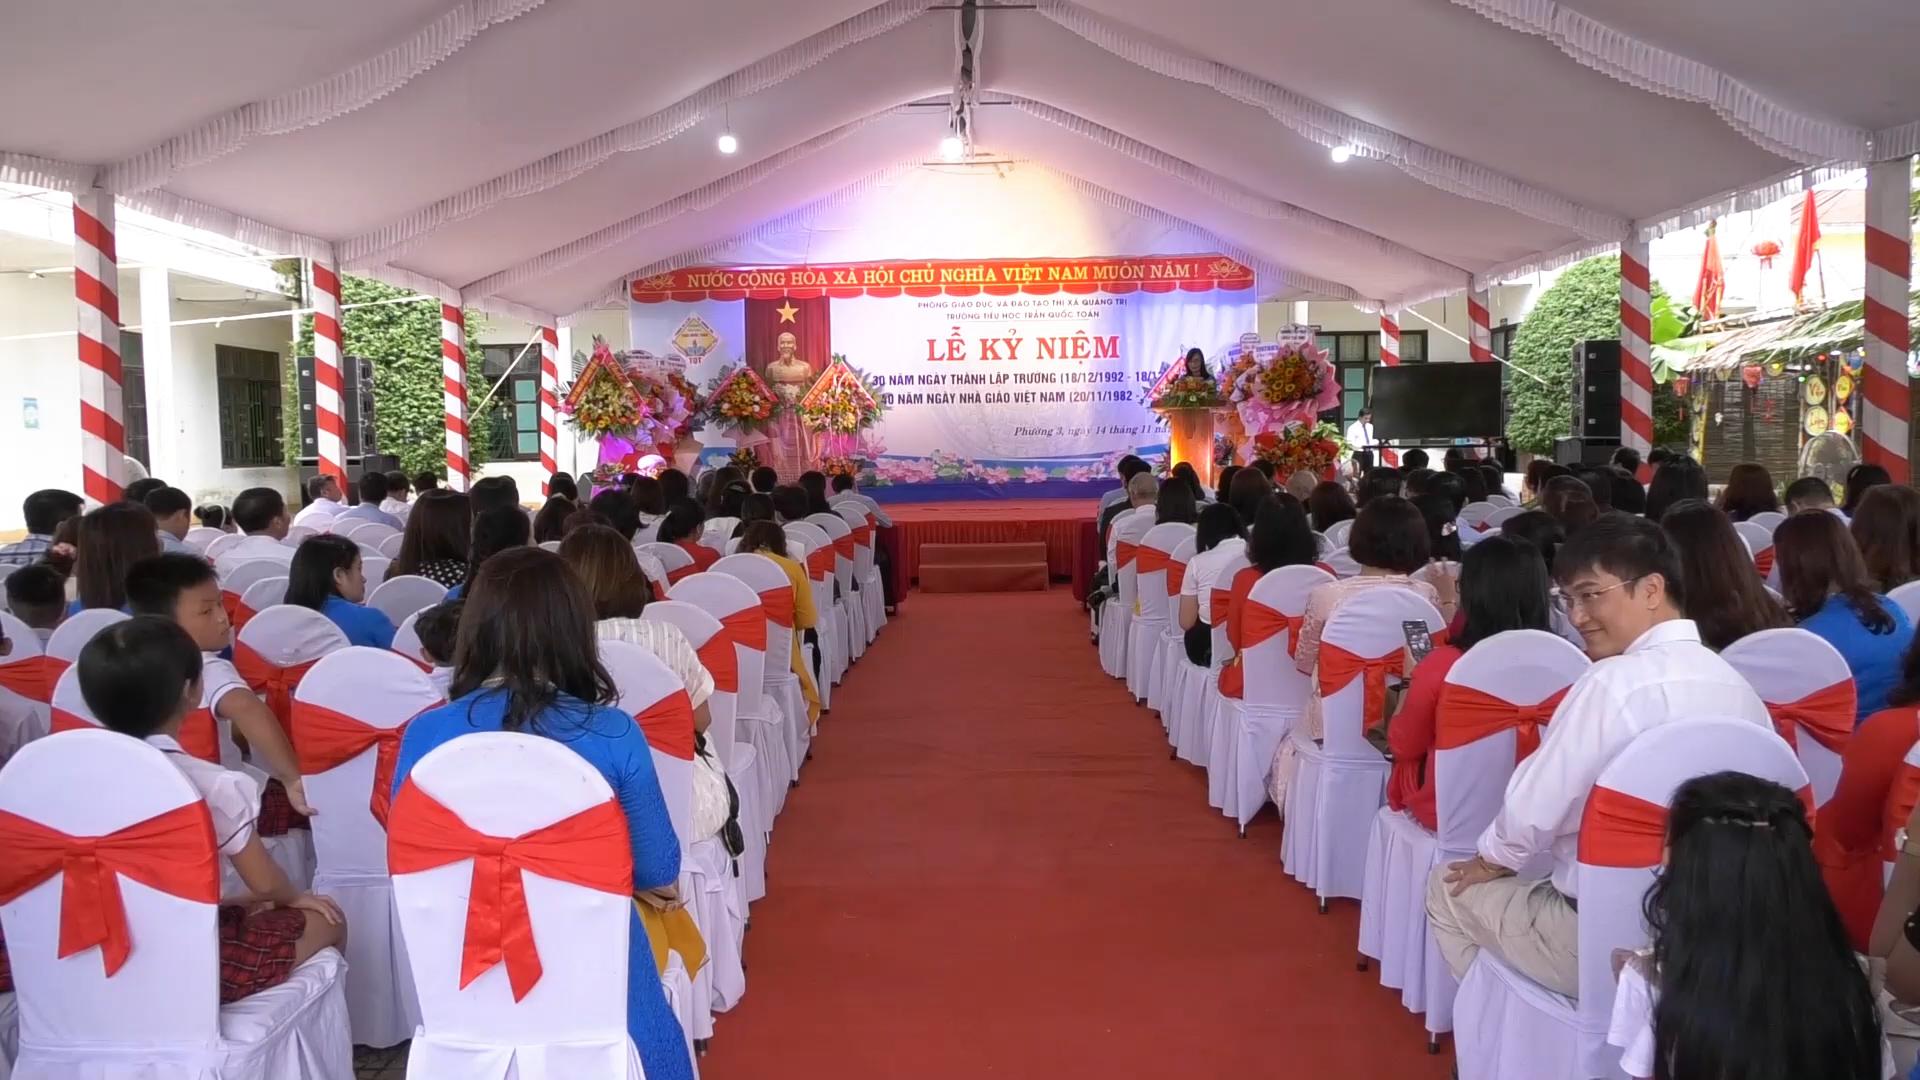 Trường Tiểu học Trần Quốc Toản, thị xã Quảng Trị tổ chức Lễ Kỷ niệm 30 năm thành lập trường